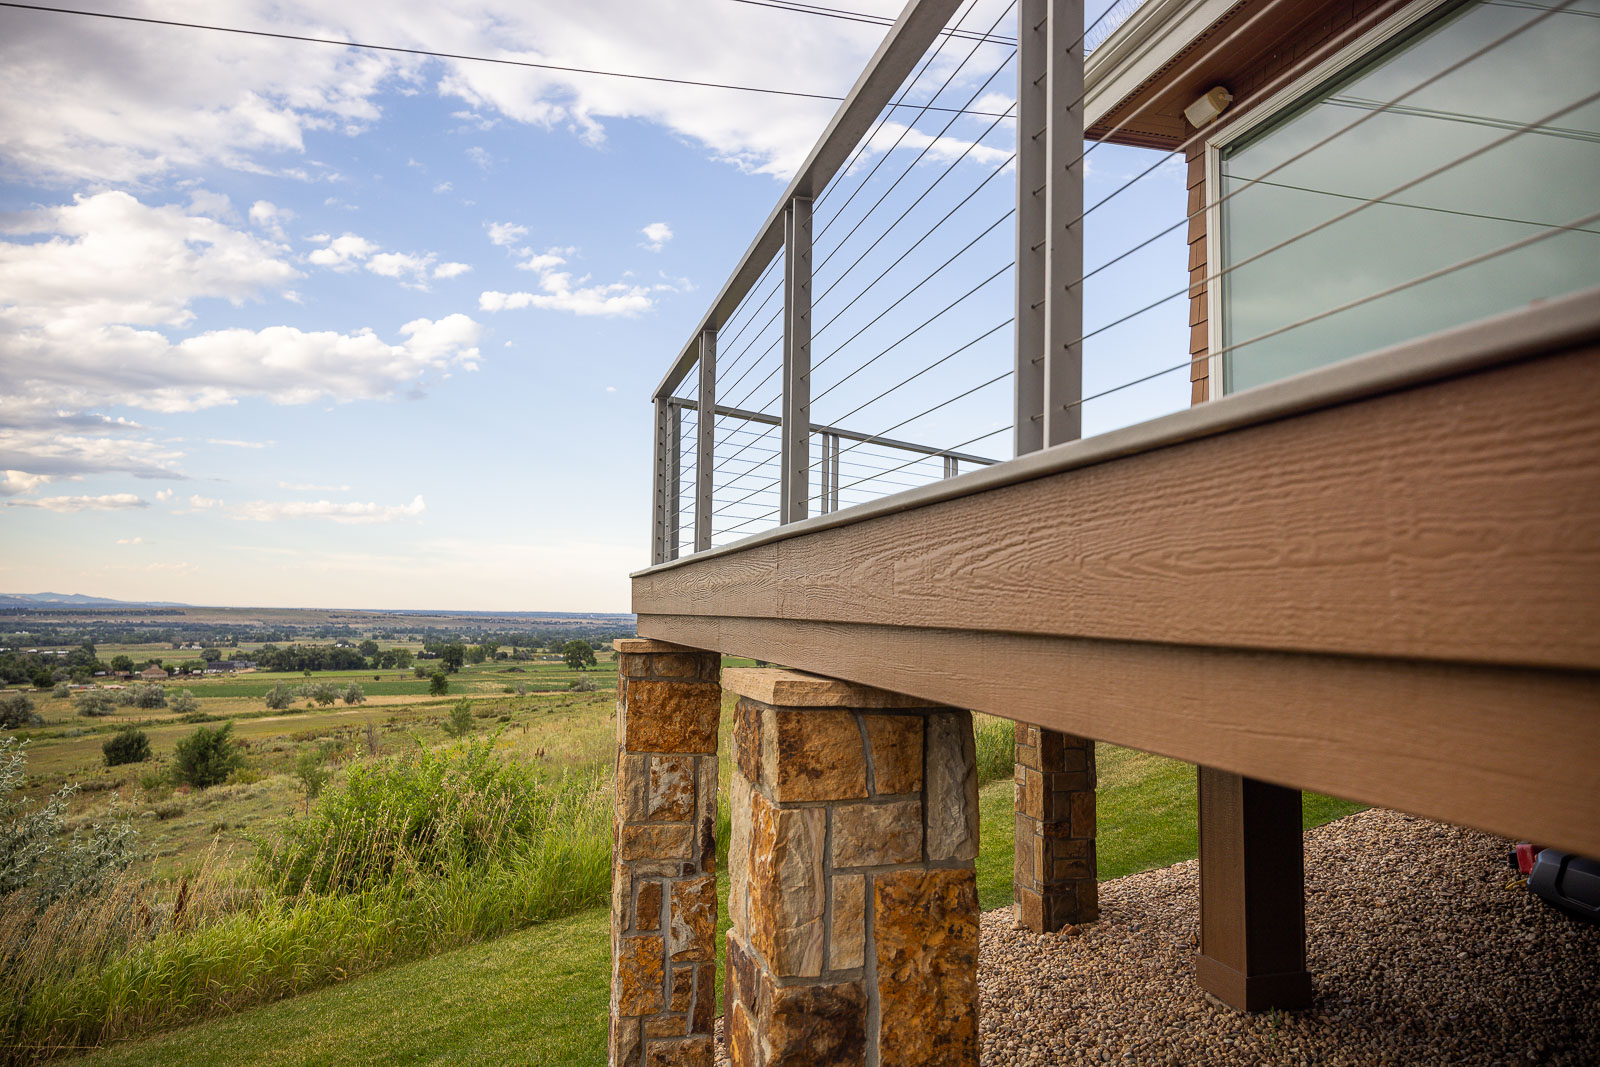 Residential landscape design back of house metal railing